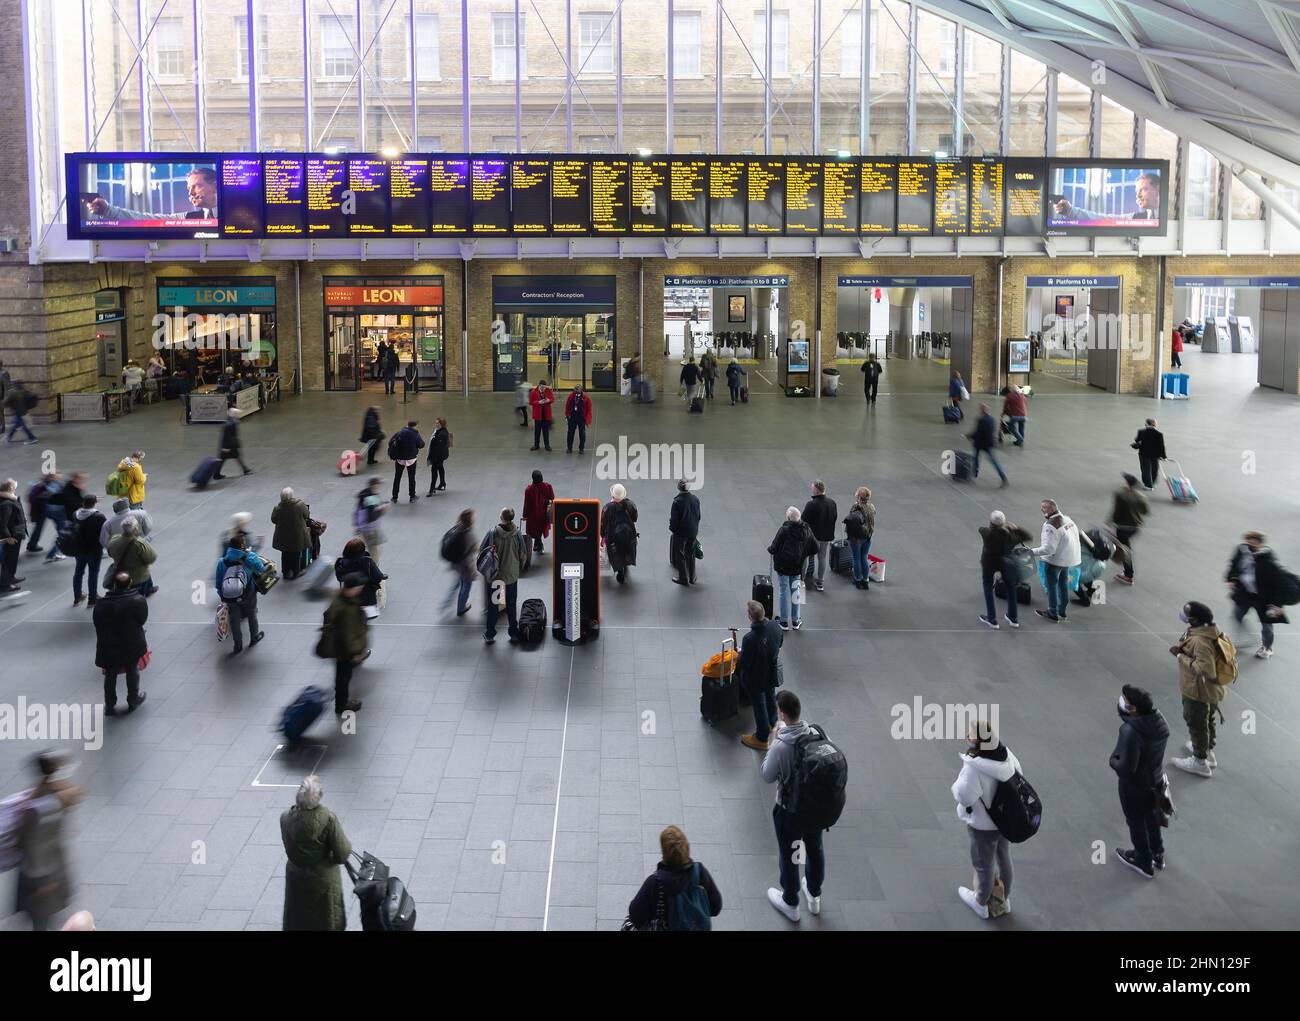 Aeroporto London Kings Cross Station; passeggeri che guardano l'imbarco delle partenze, stazione Kings Cross Rail London UK Foto Stock